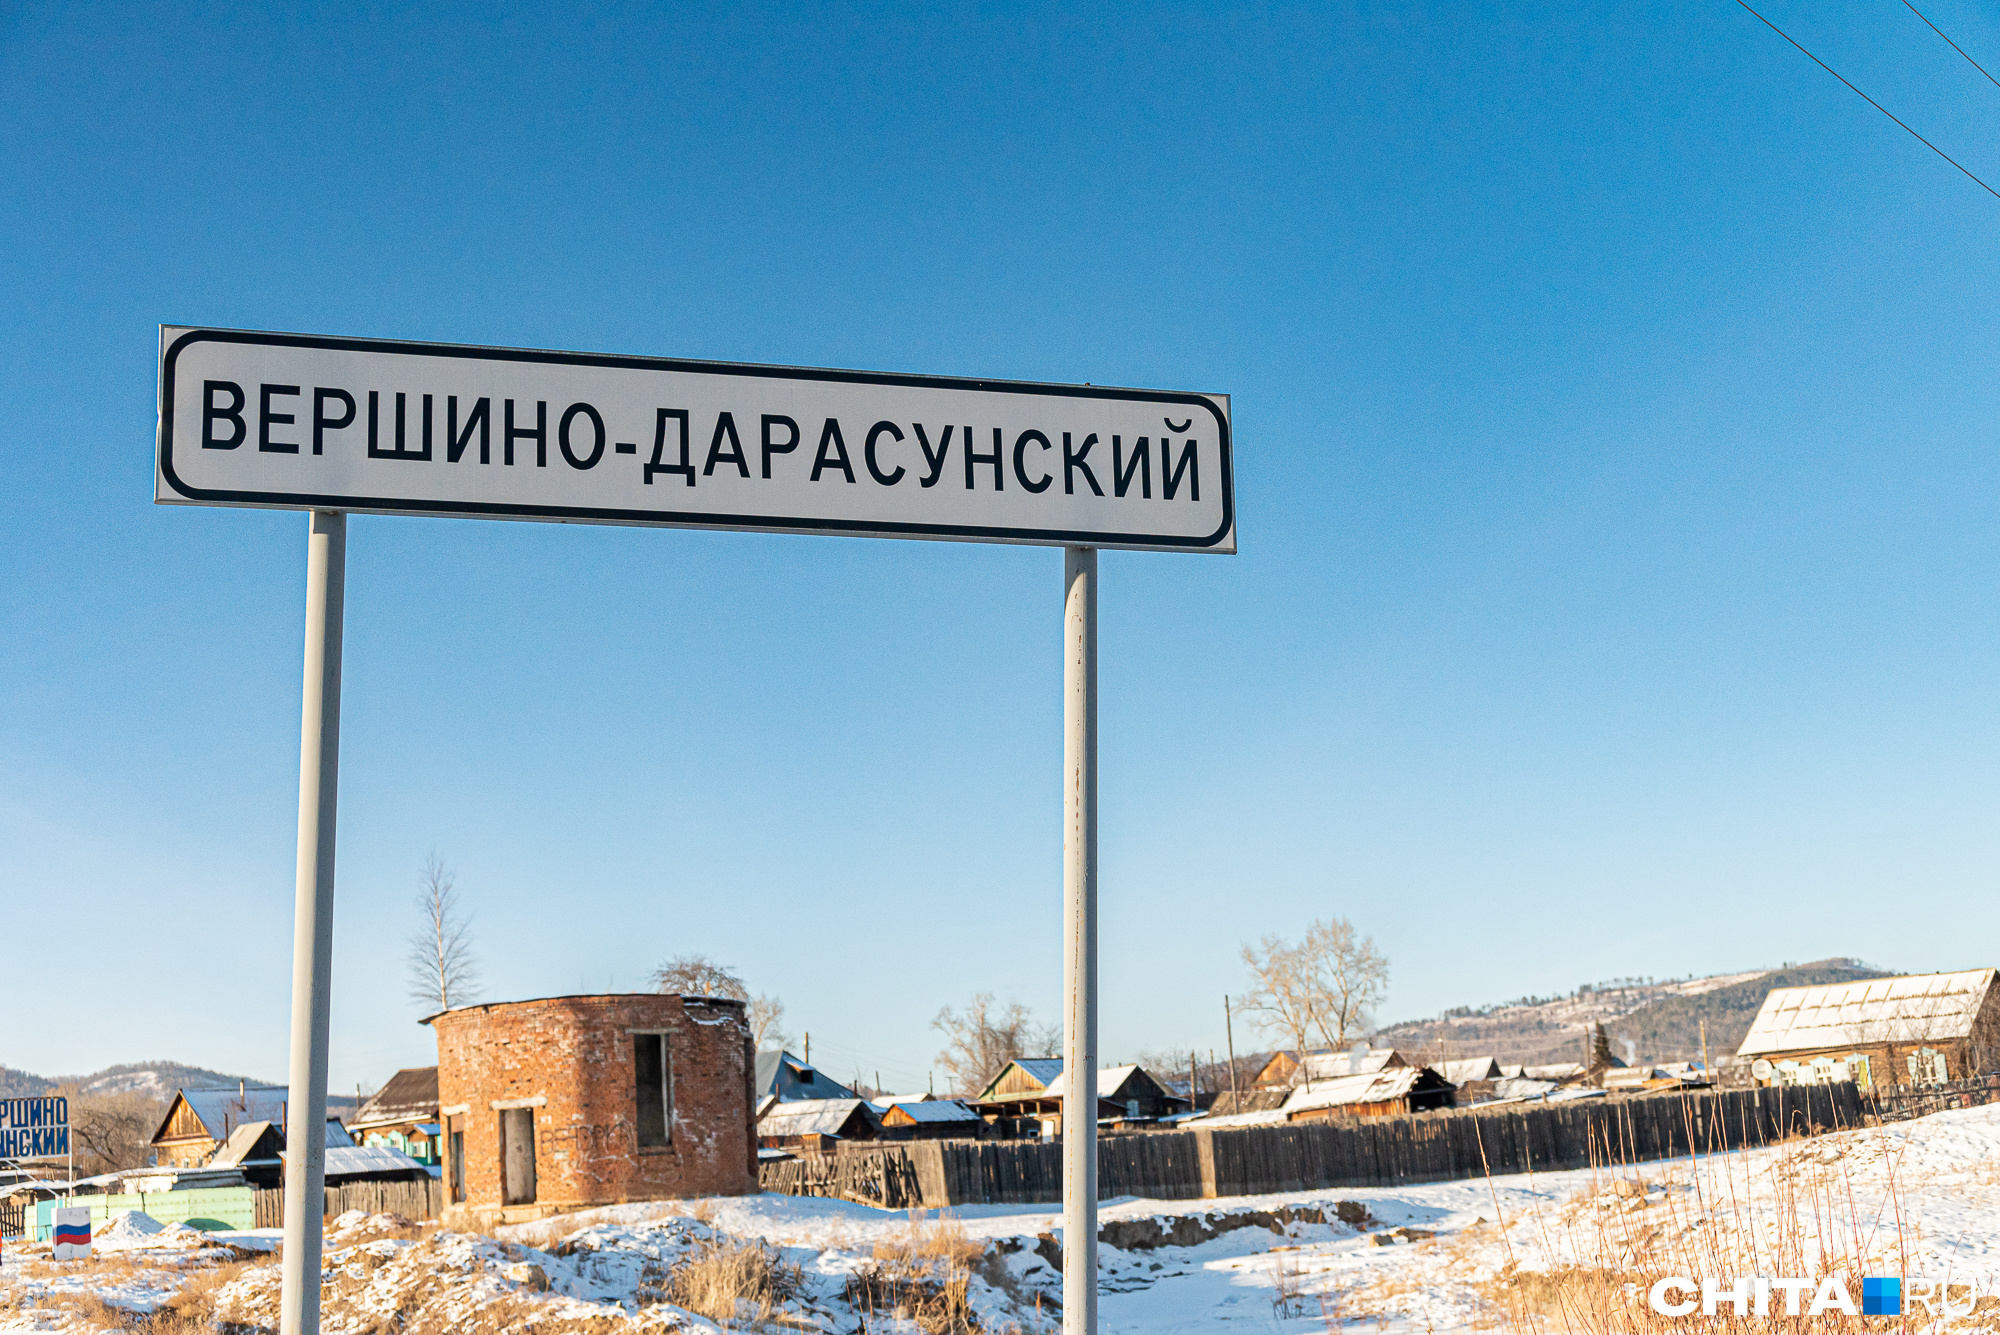 Глава поселка в Забайкалье не согласовал местным жителям проведение голодовки